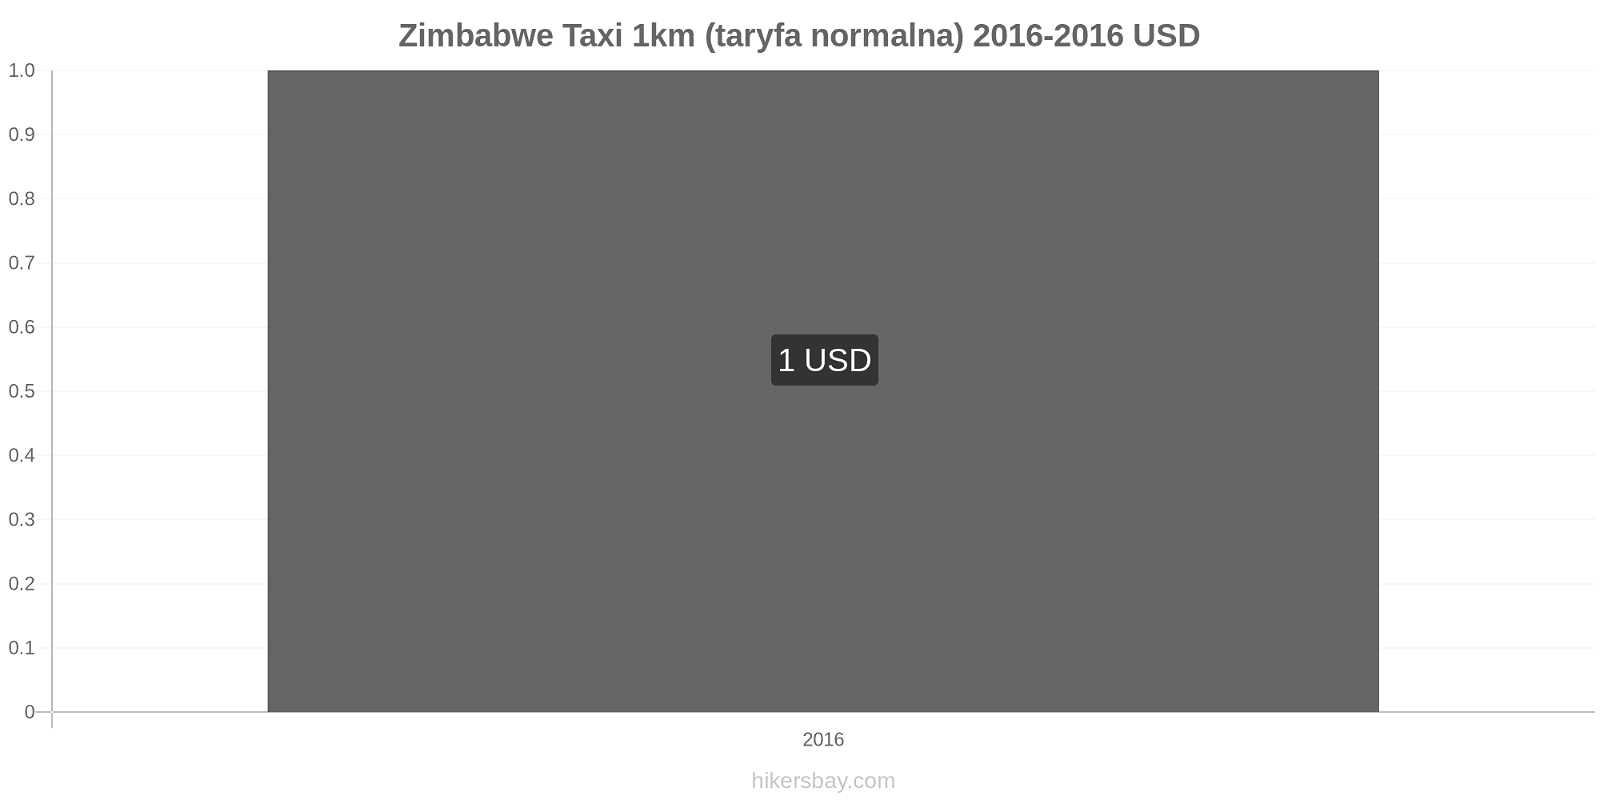 Zimbabwe zmiany cen Taxi 1km (taryfa normalna) hikersbay.com